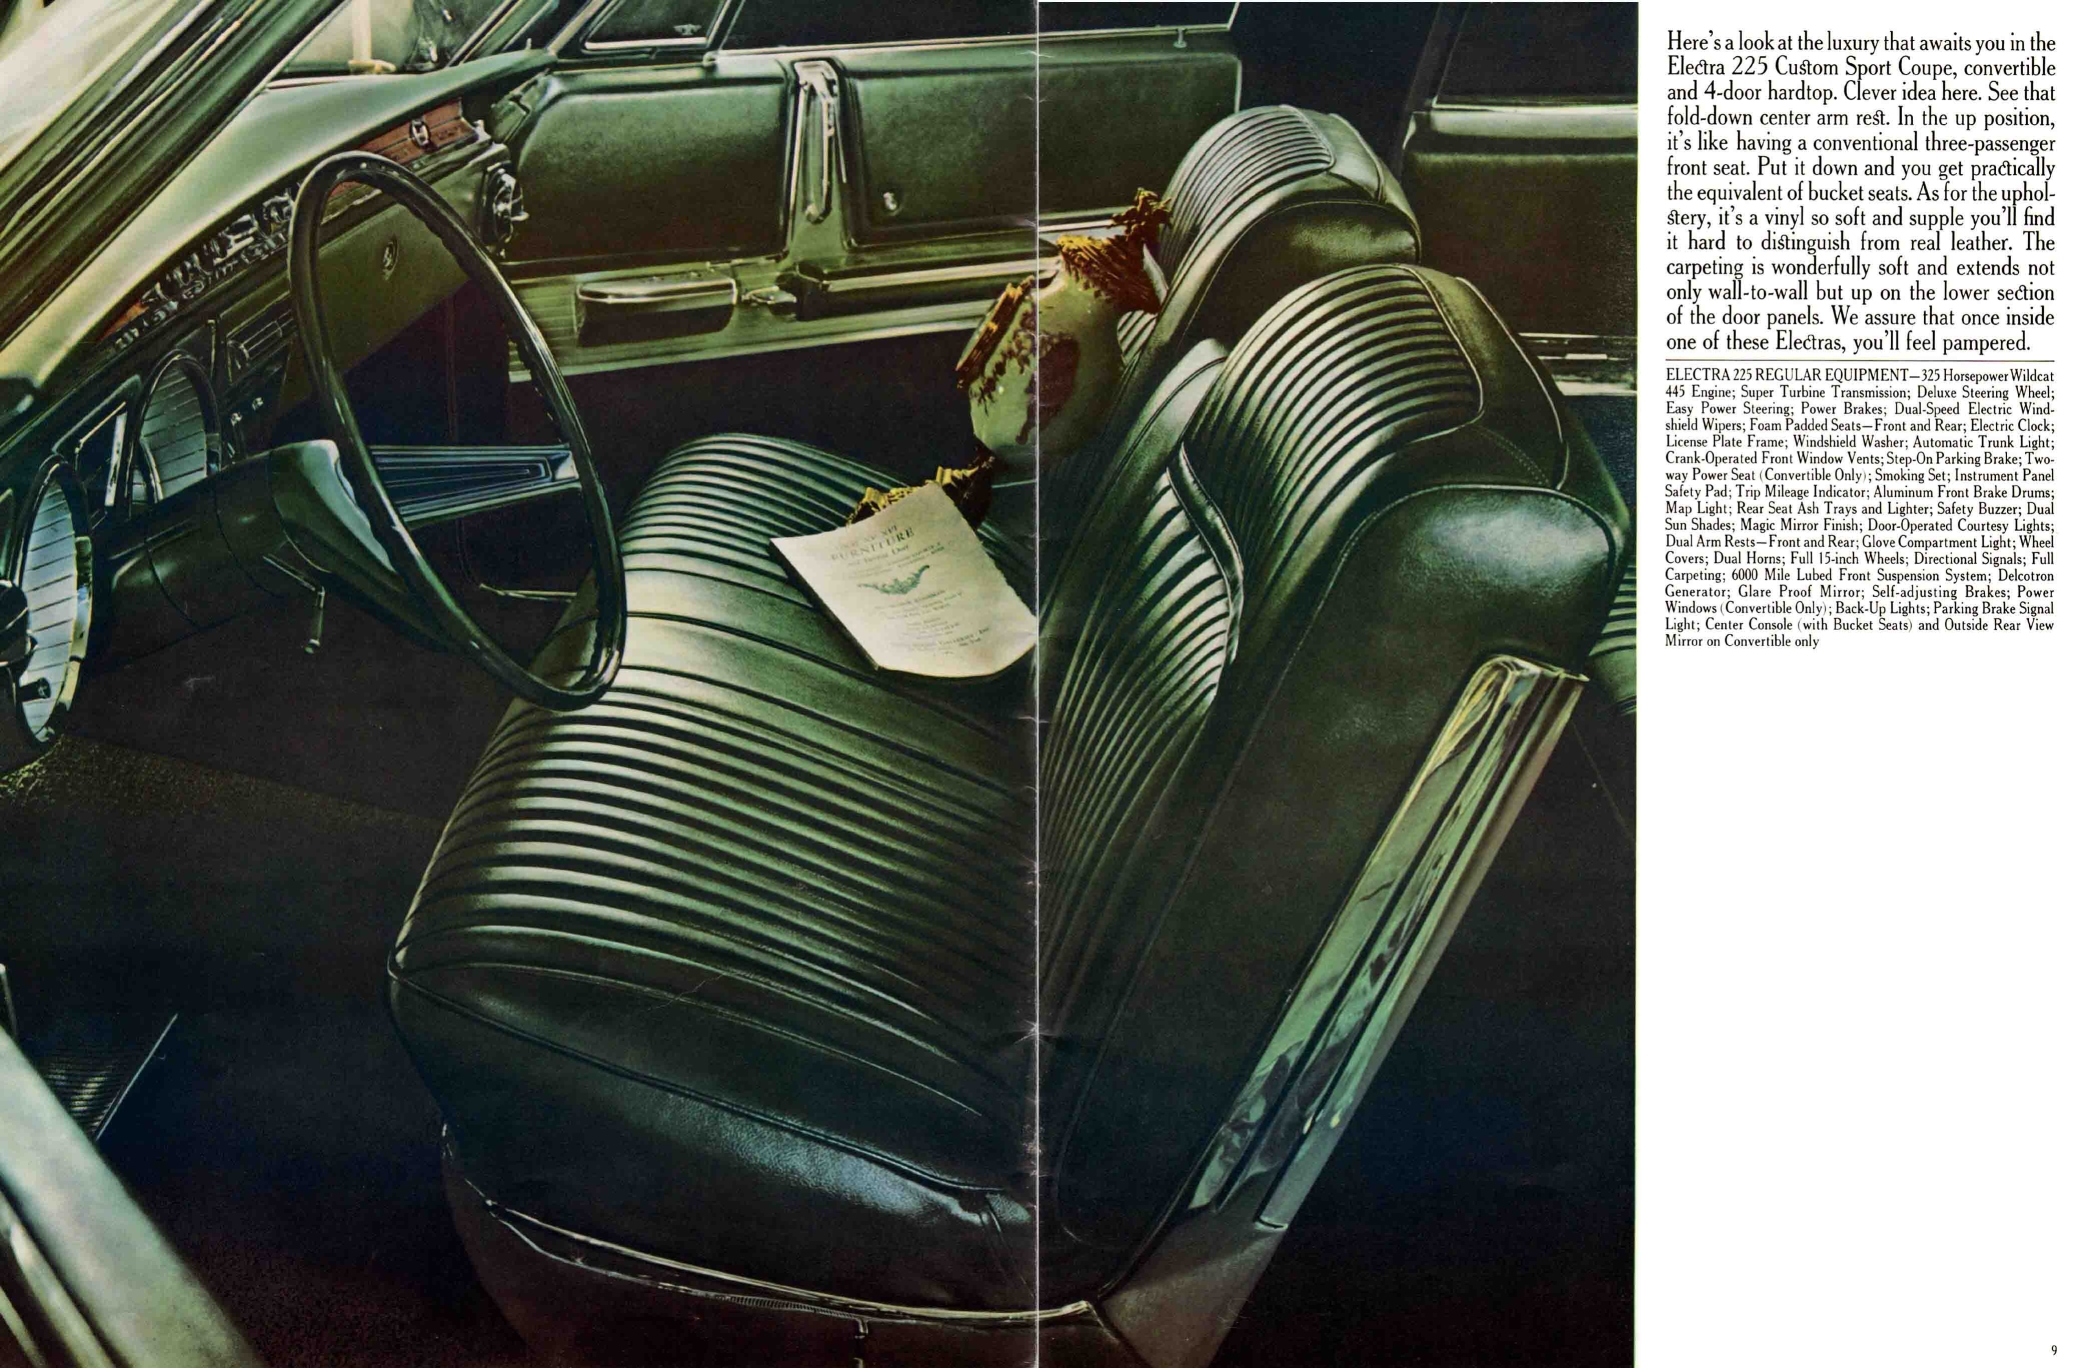 1965 Buick Full Line Prestige-08-09